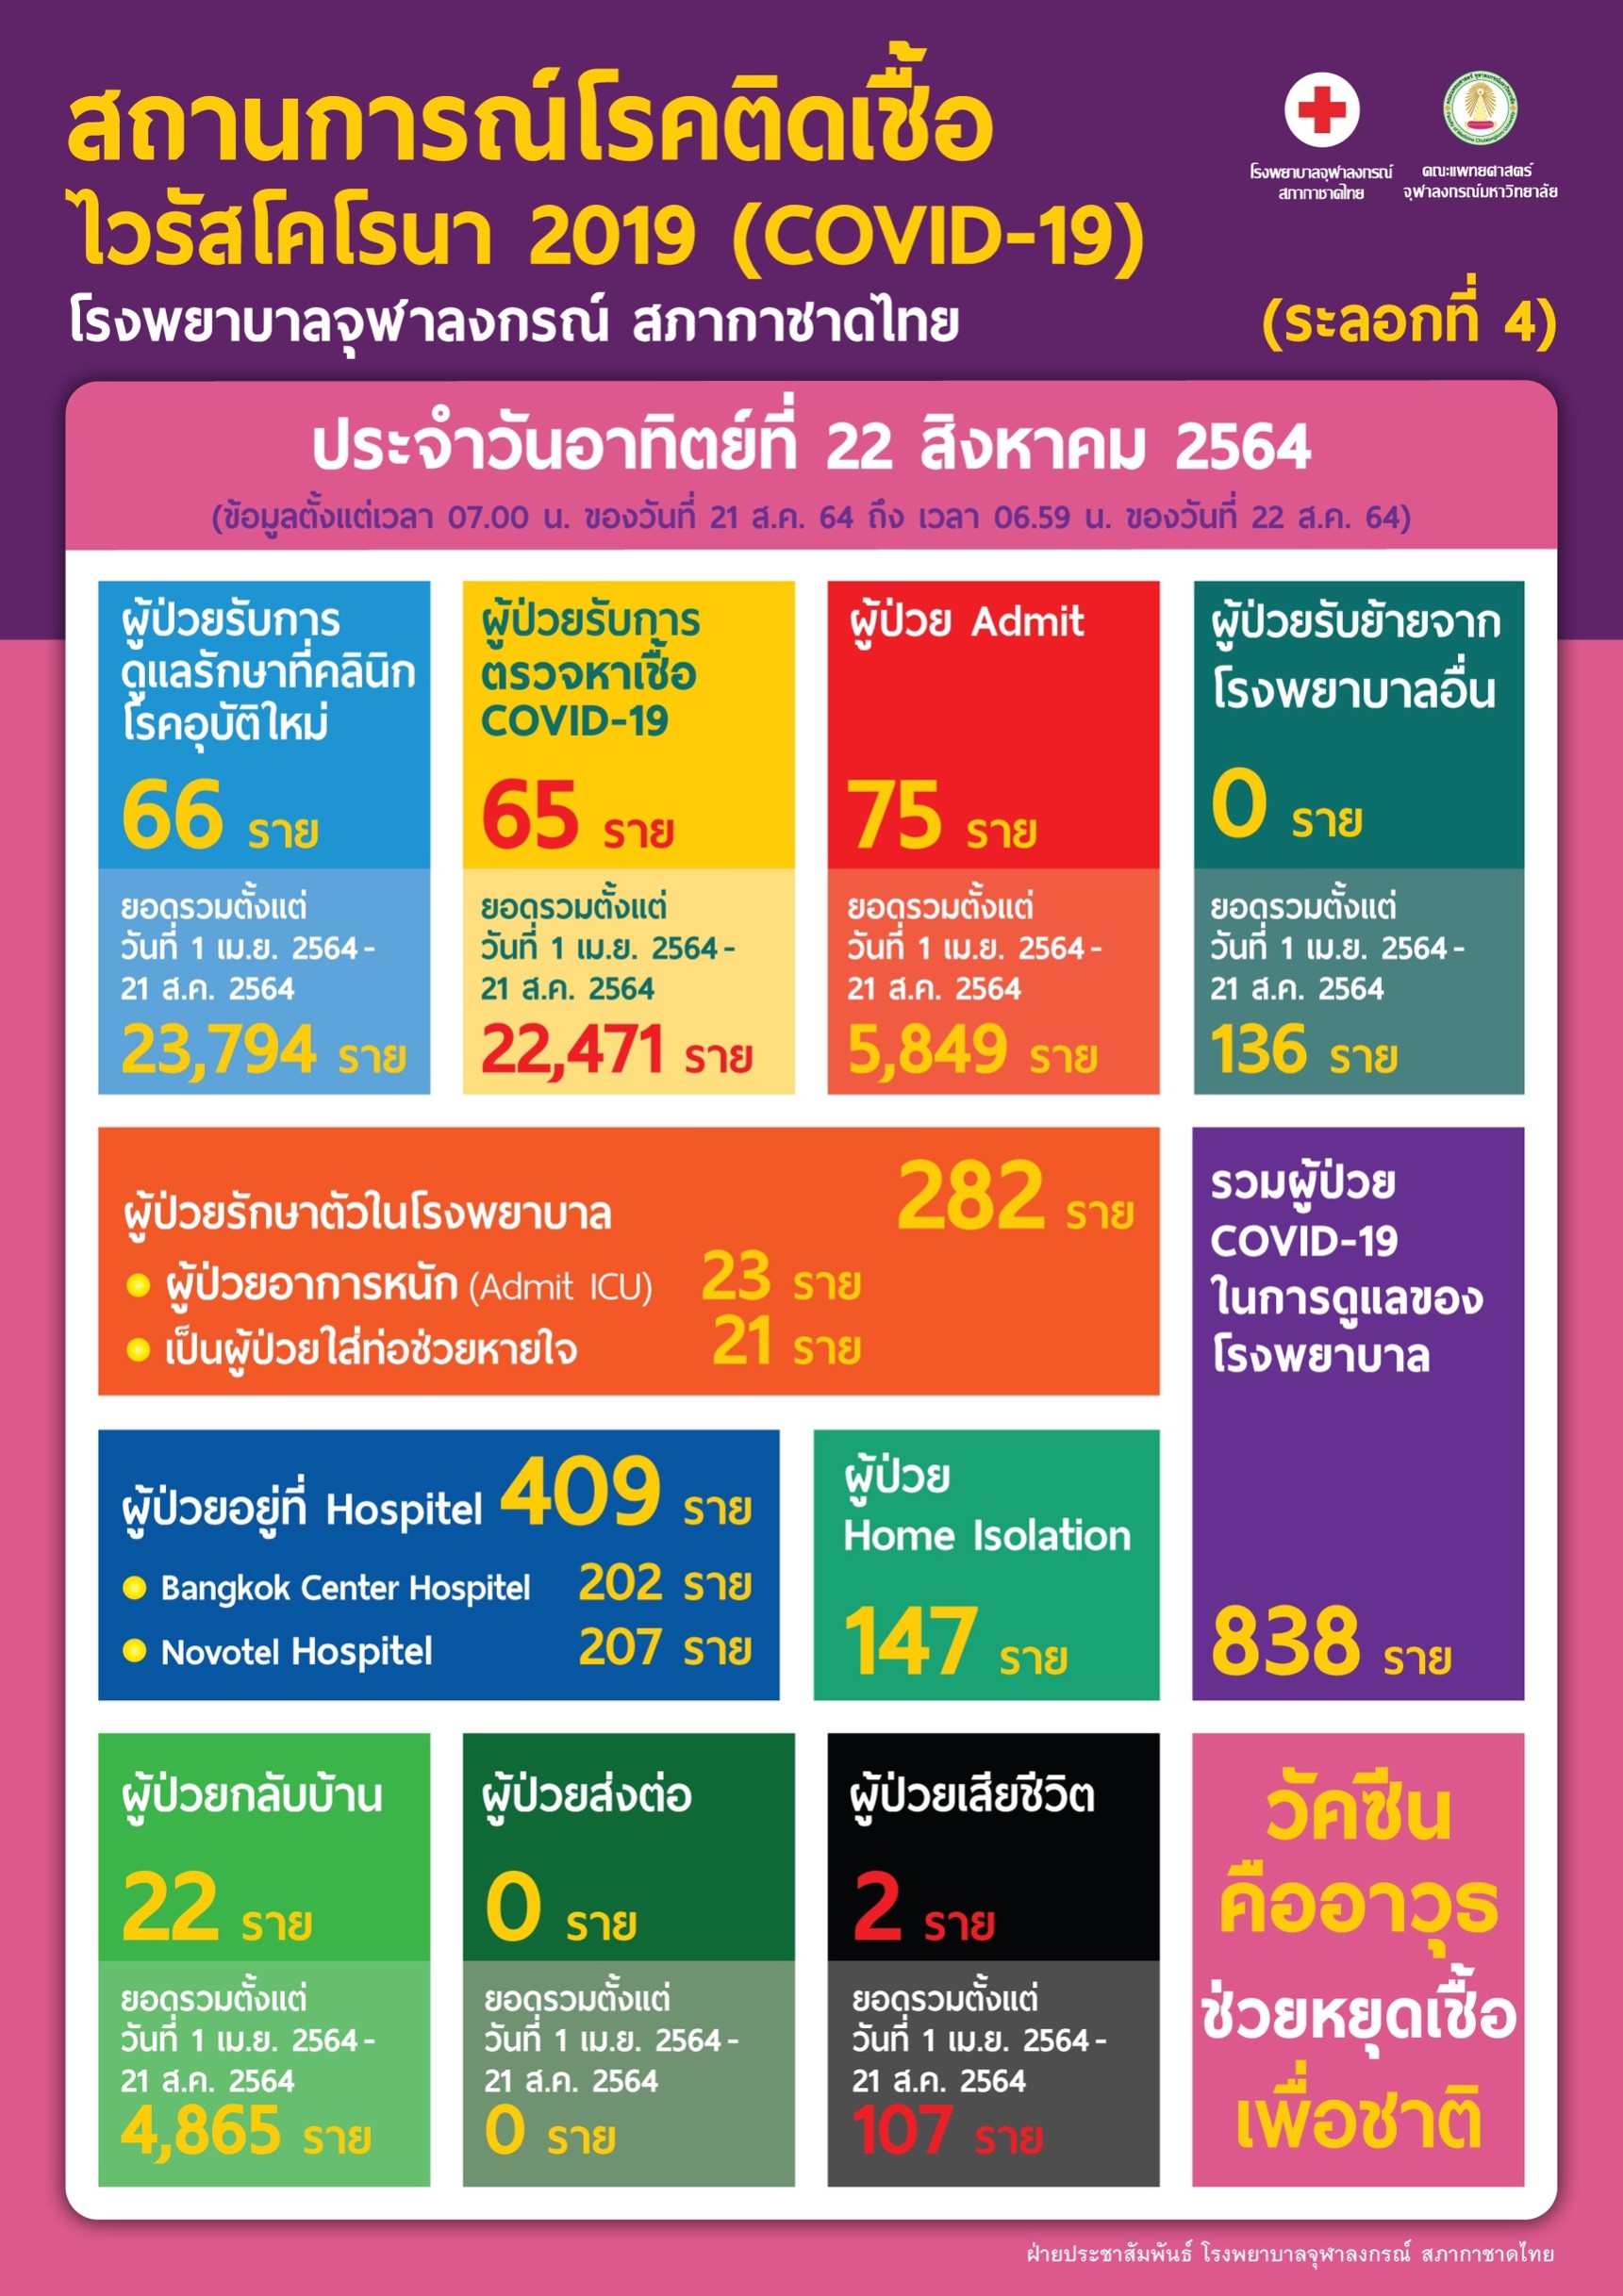 สถานการณ์โรคติดเชื้อไวรัสโคโรนา 2019 (COVID-19) (ระลอกที่ 4) โรงพยาบาลจุฬาลงกรณ์ สภากาชาดไทย ประจำวันอาทิตย์ที่ 22 สิงหาคม 2564